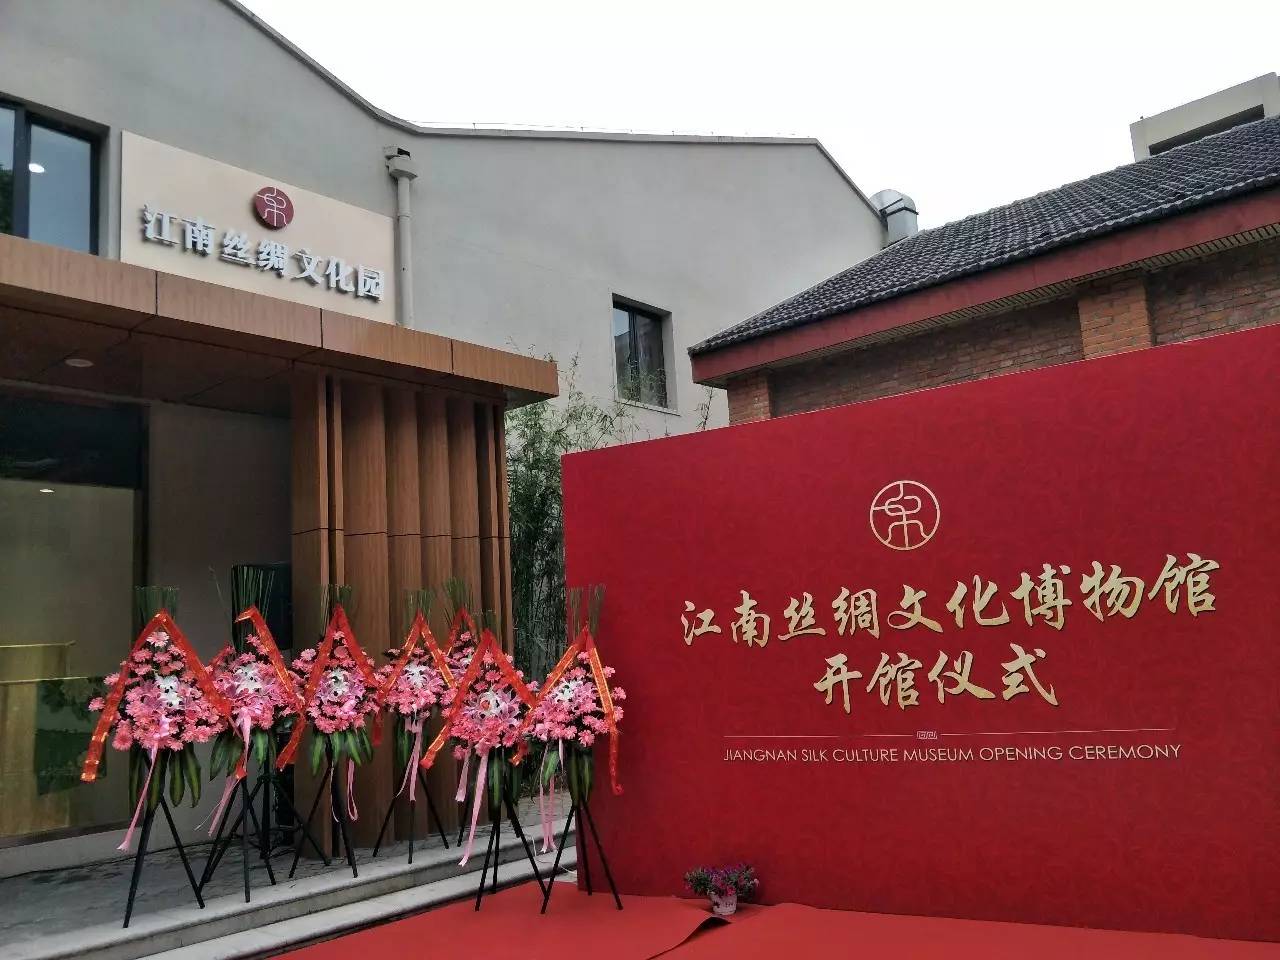 南京首家丝绸文化主题博物馆江南丝绸文化博物馆开幕